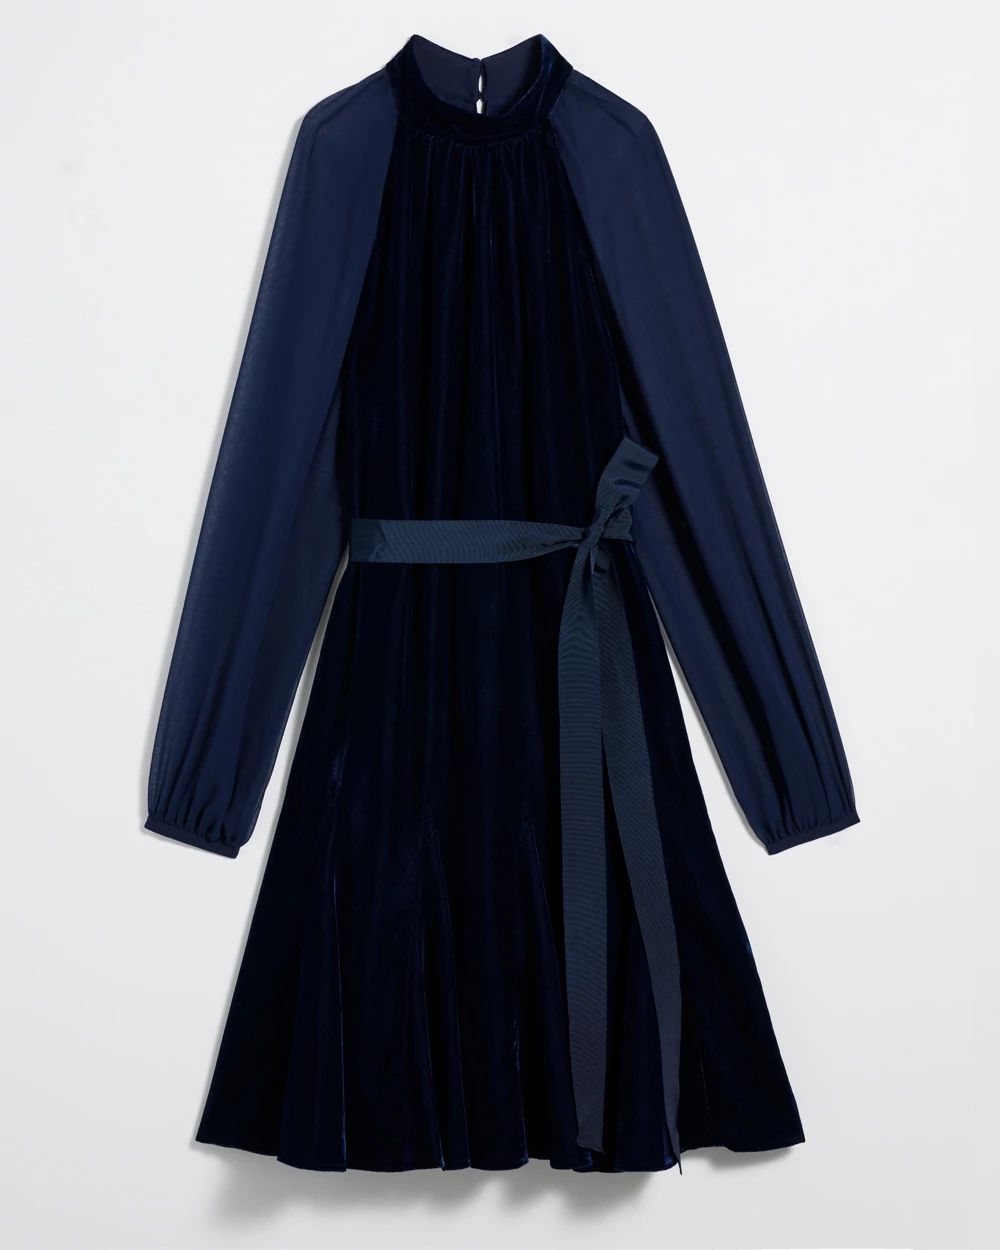 Sheer Sleeve Velvet Mini Dress click to view larger image.